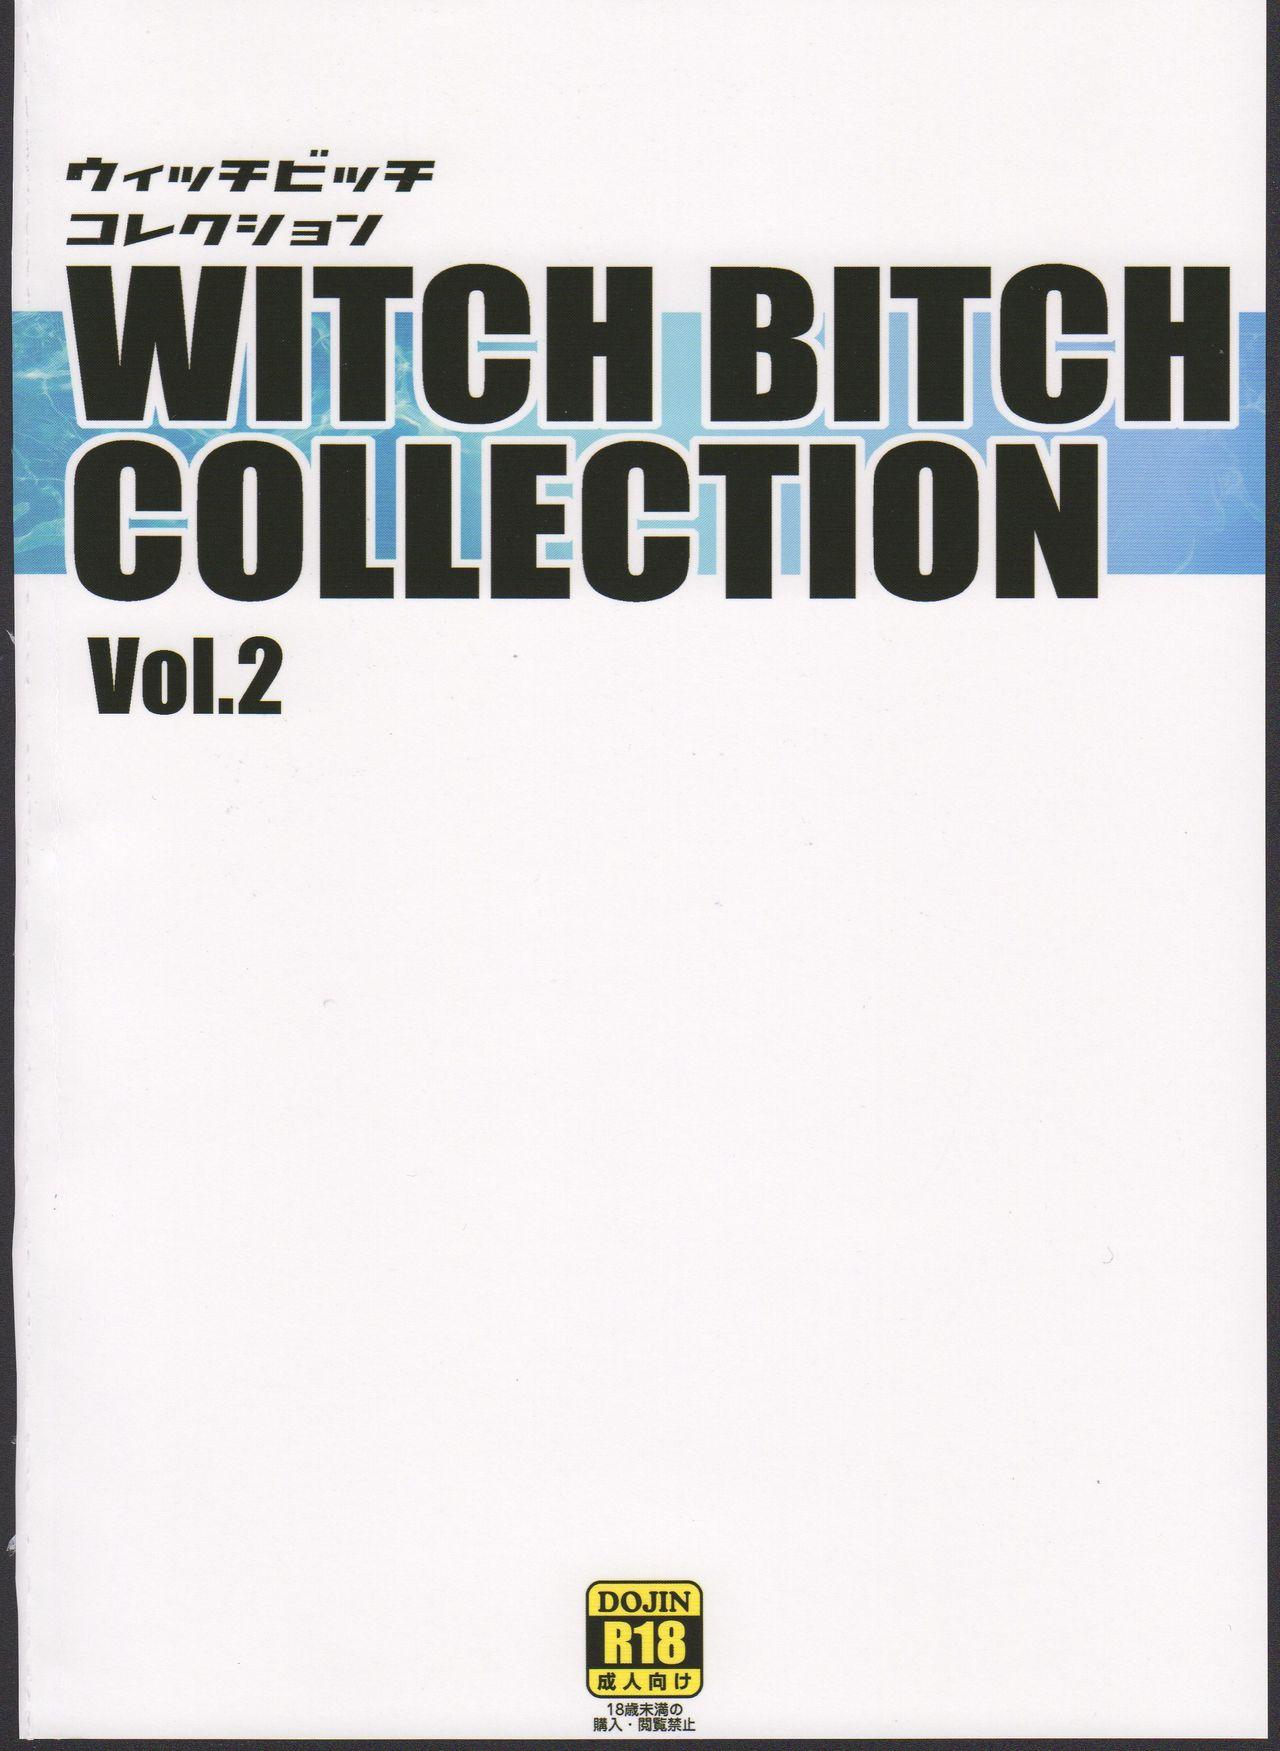 Chichikko Bitch 3 - Witch Bitch Collection Vol.2 Version 23